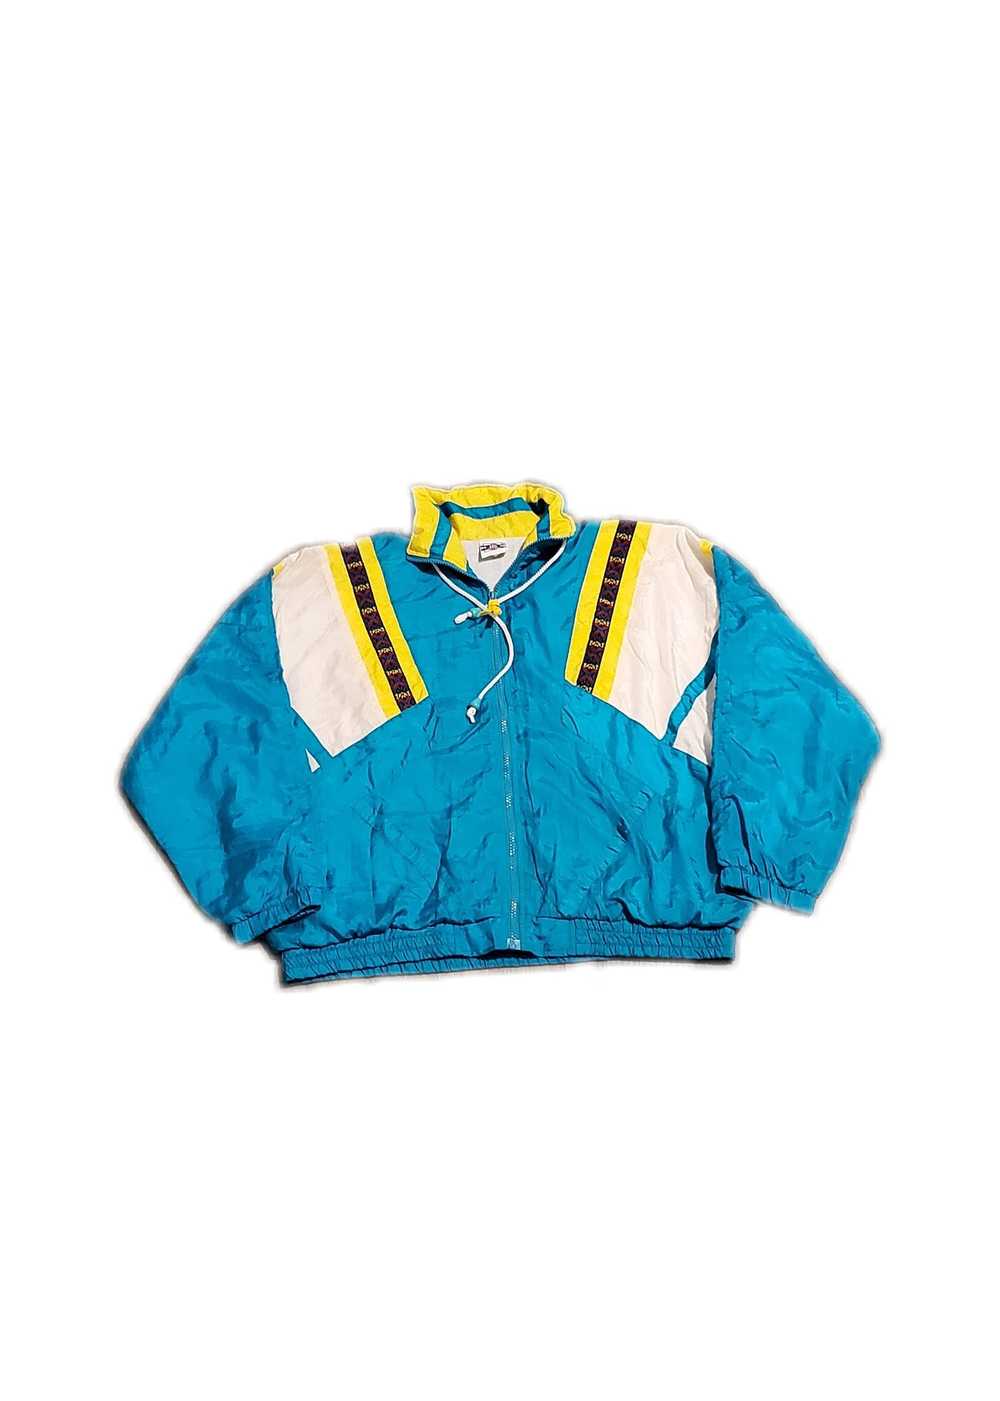 Vintage Polyester jacket - image 1